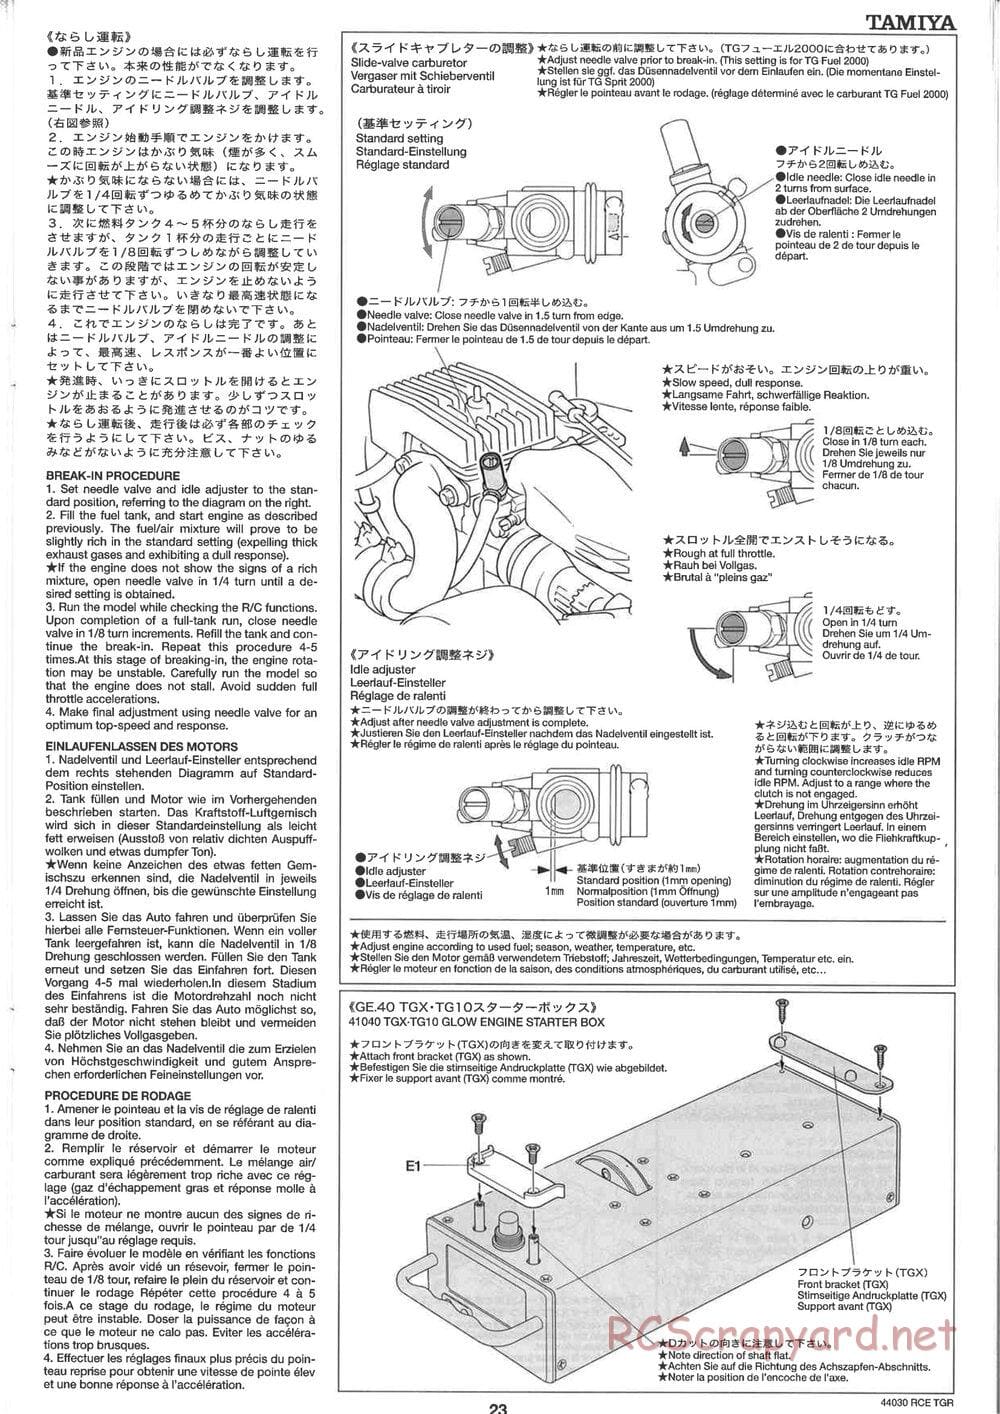 Tamiya - TGR Chassis - Manual - Page 23